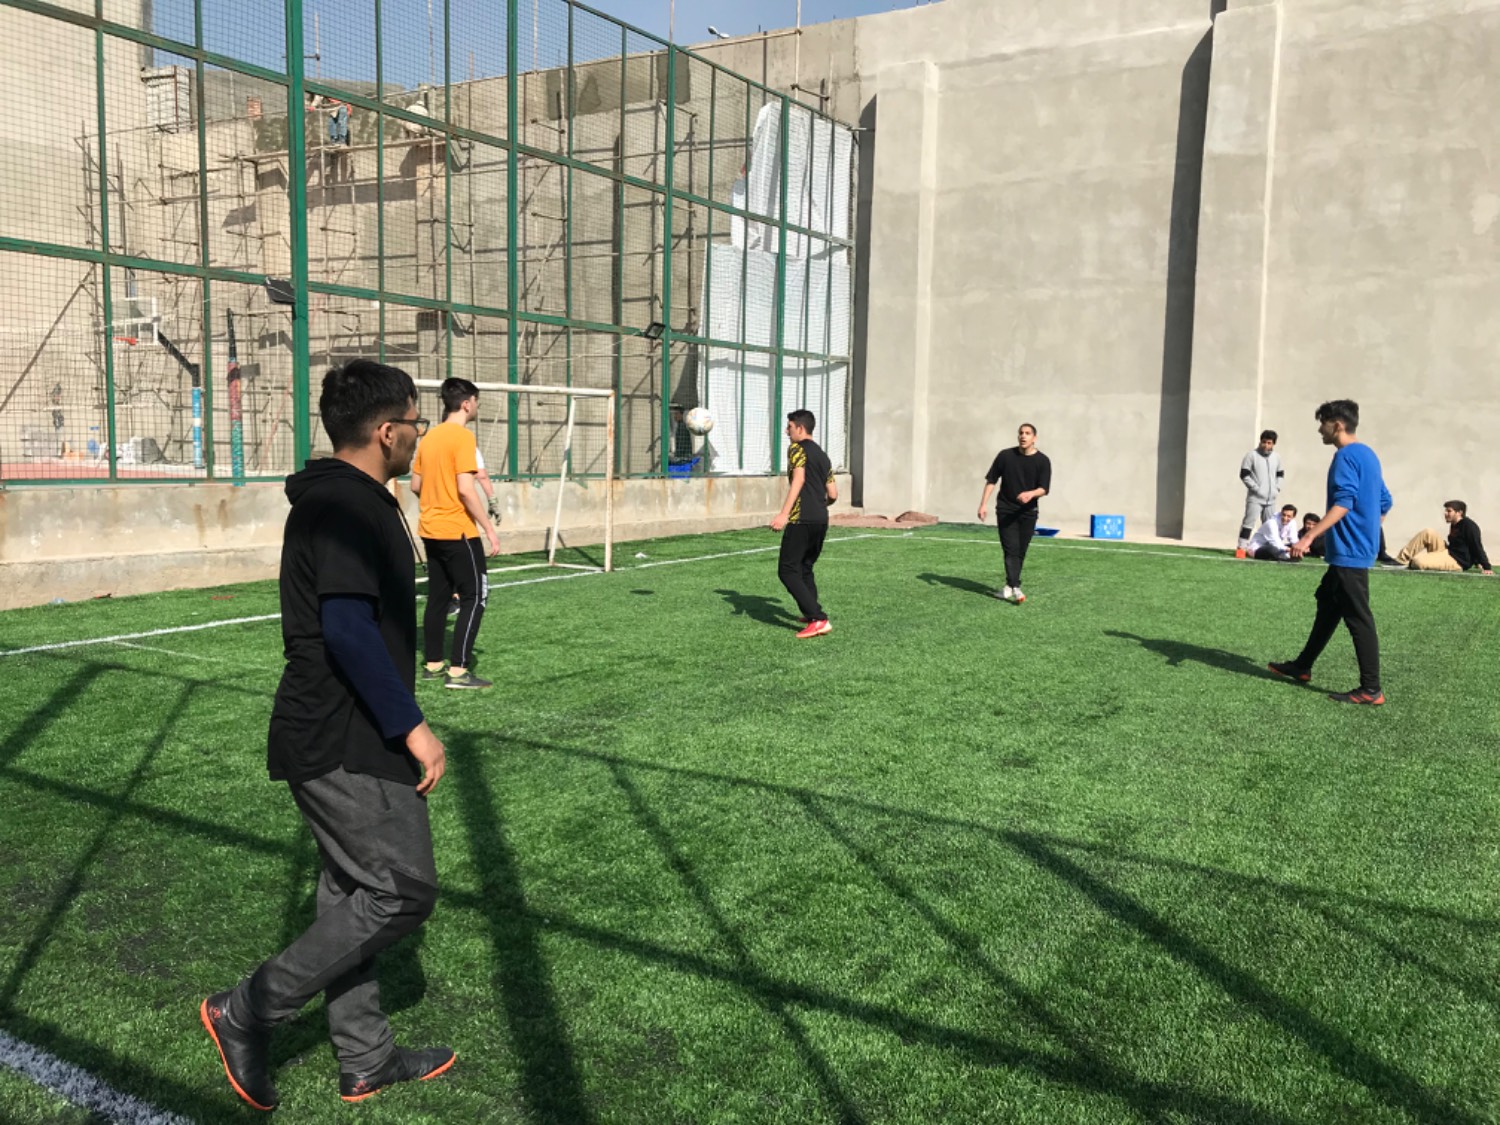 افتتاح و بهره برداری از زمین چمن دبیرستان واله چیتگر